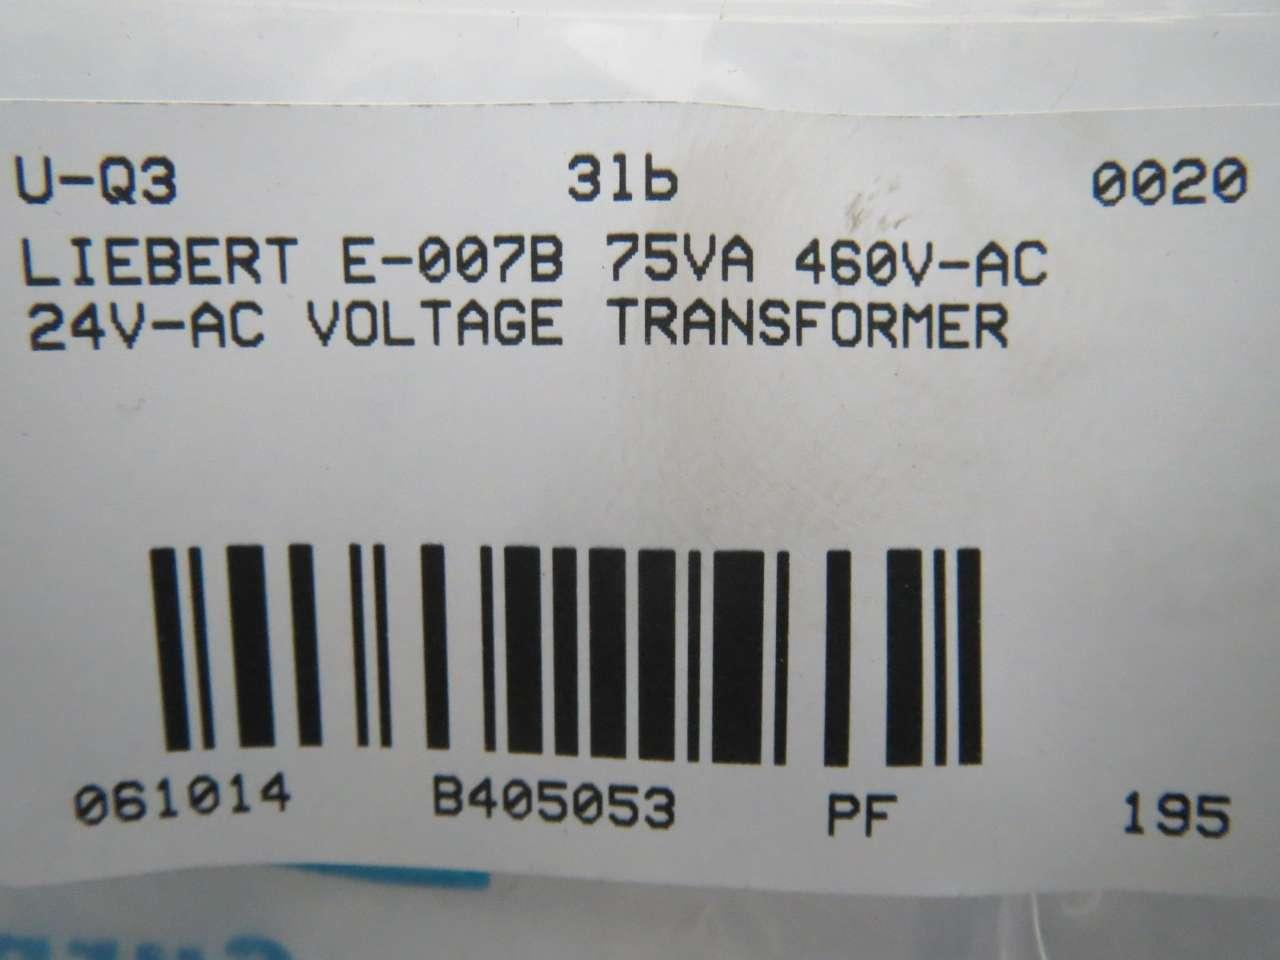 Details about   BASLER ELECTRIC BE 17384 001 LIEBERT E-007B 75 VA TRANSFORMER 